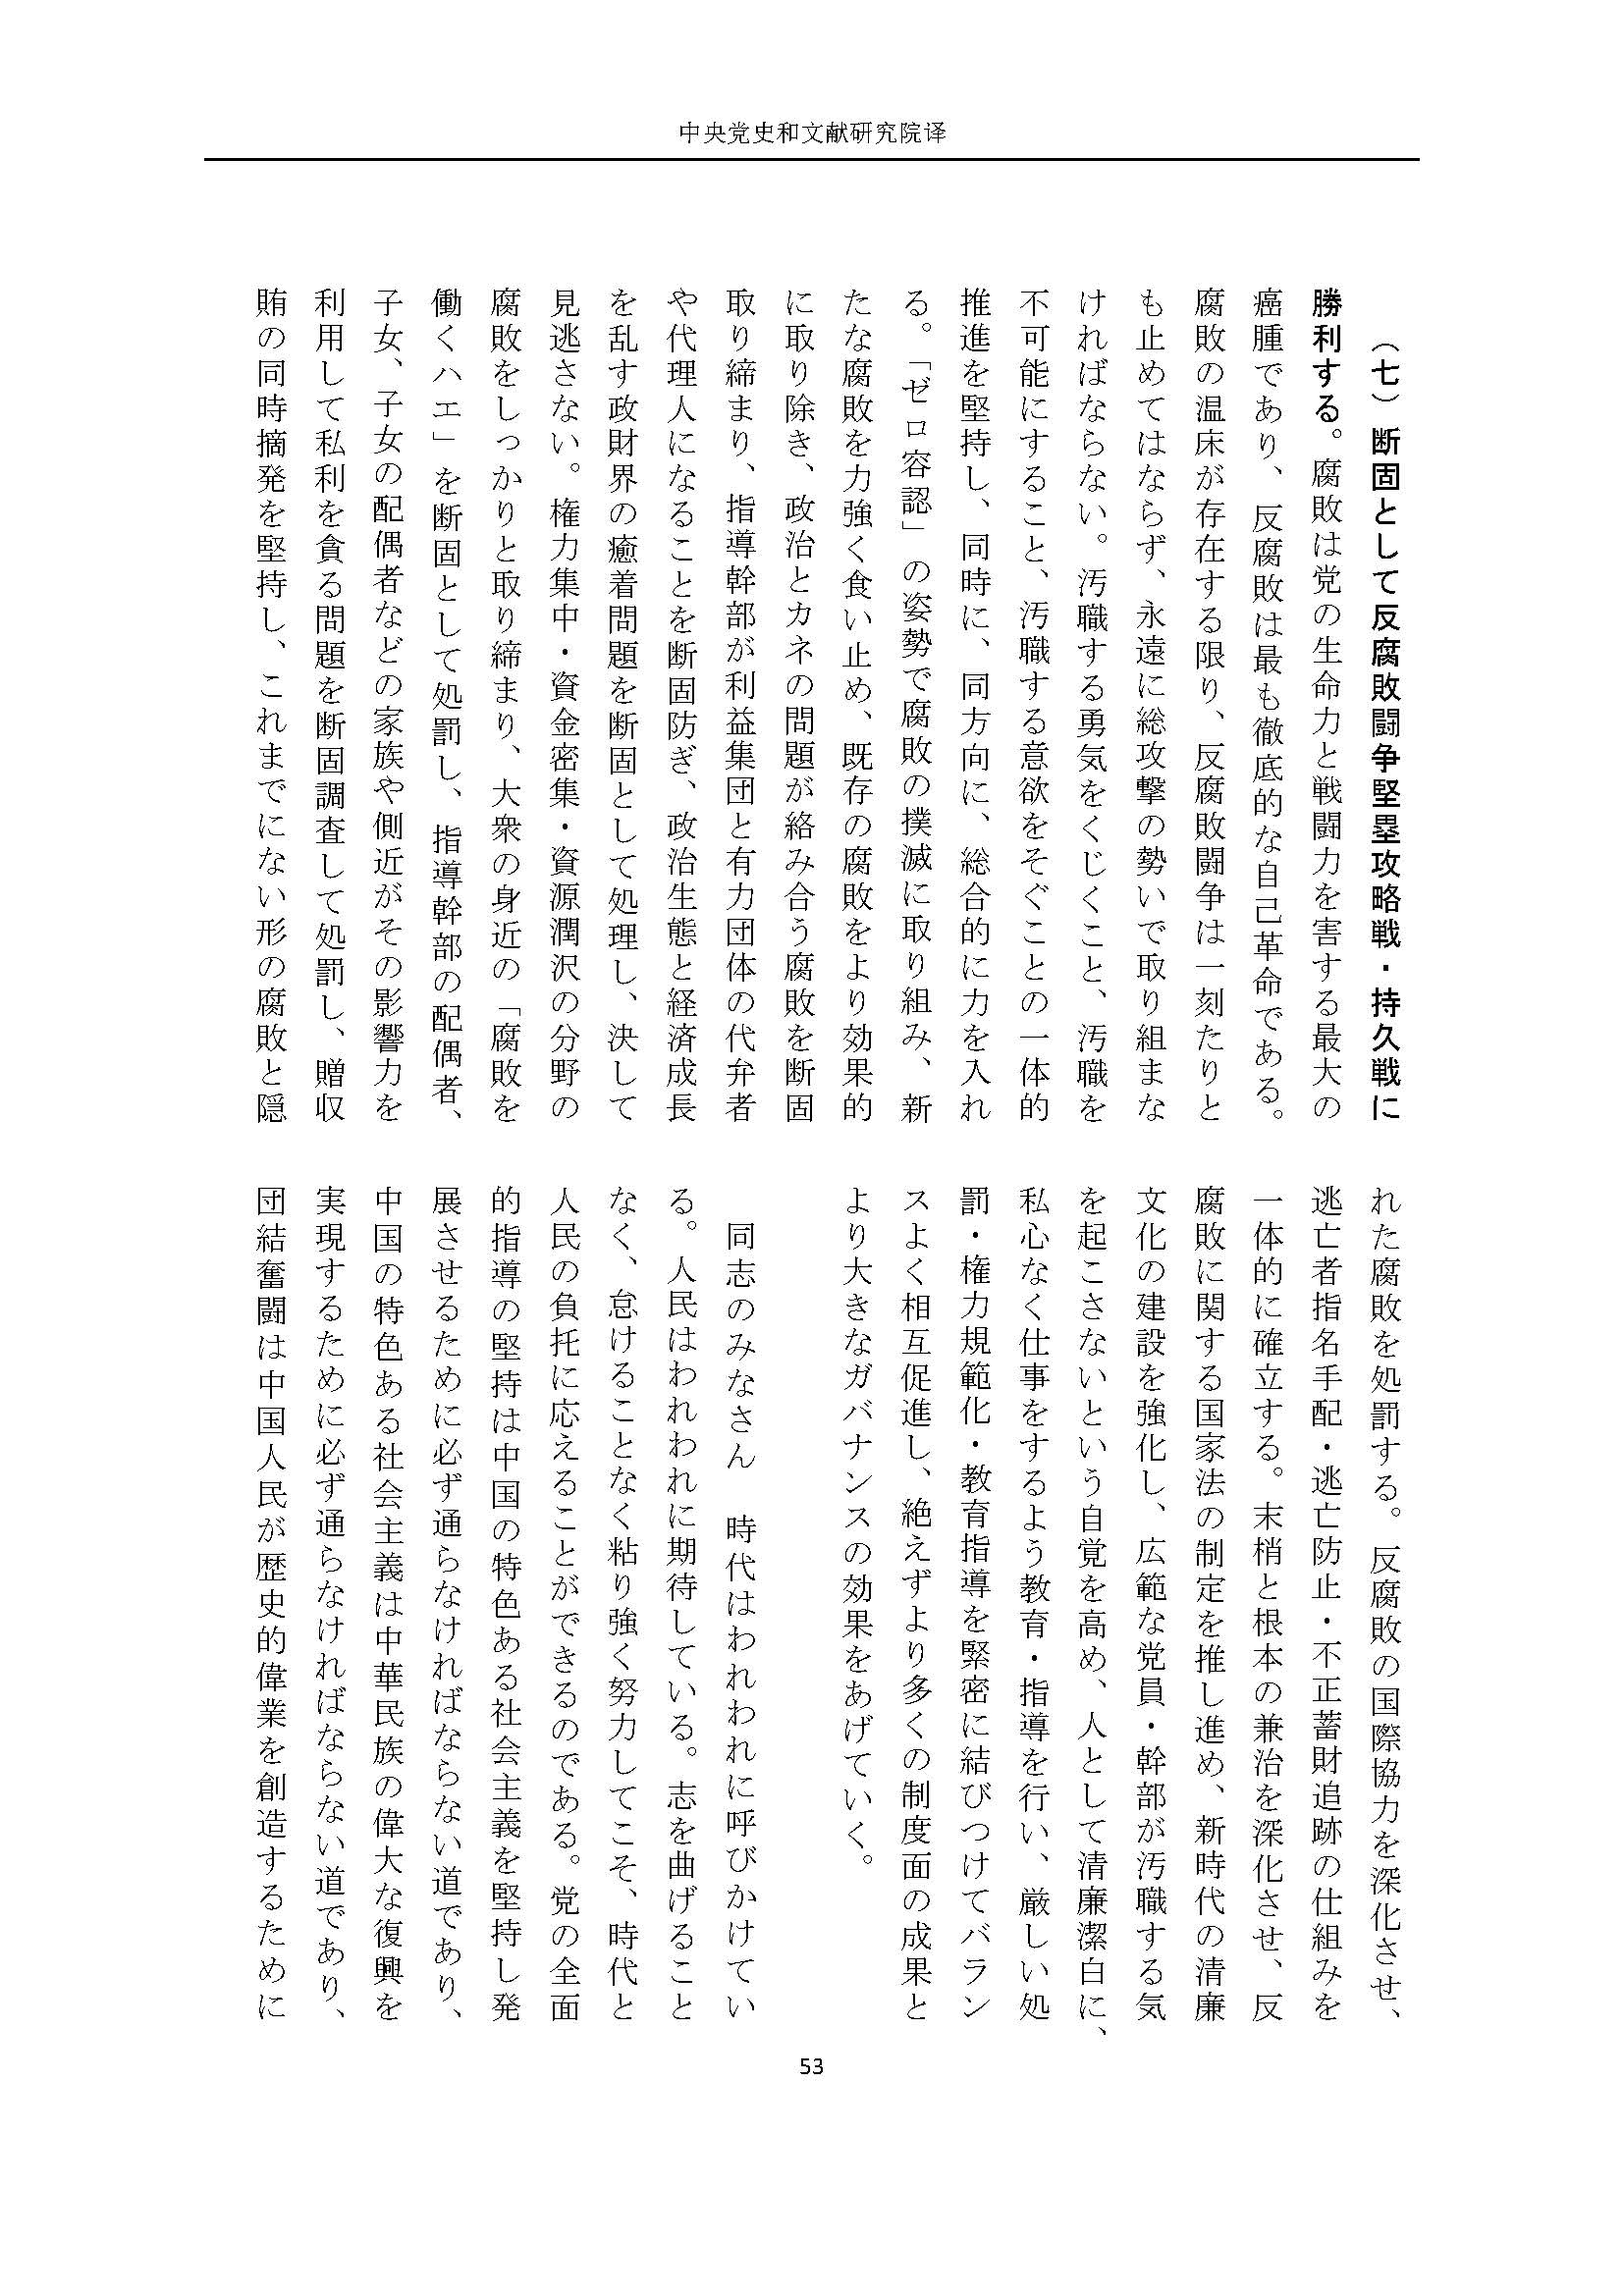 二十大报告（日文全文）_页面_54